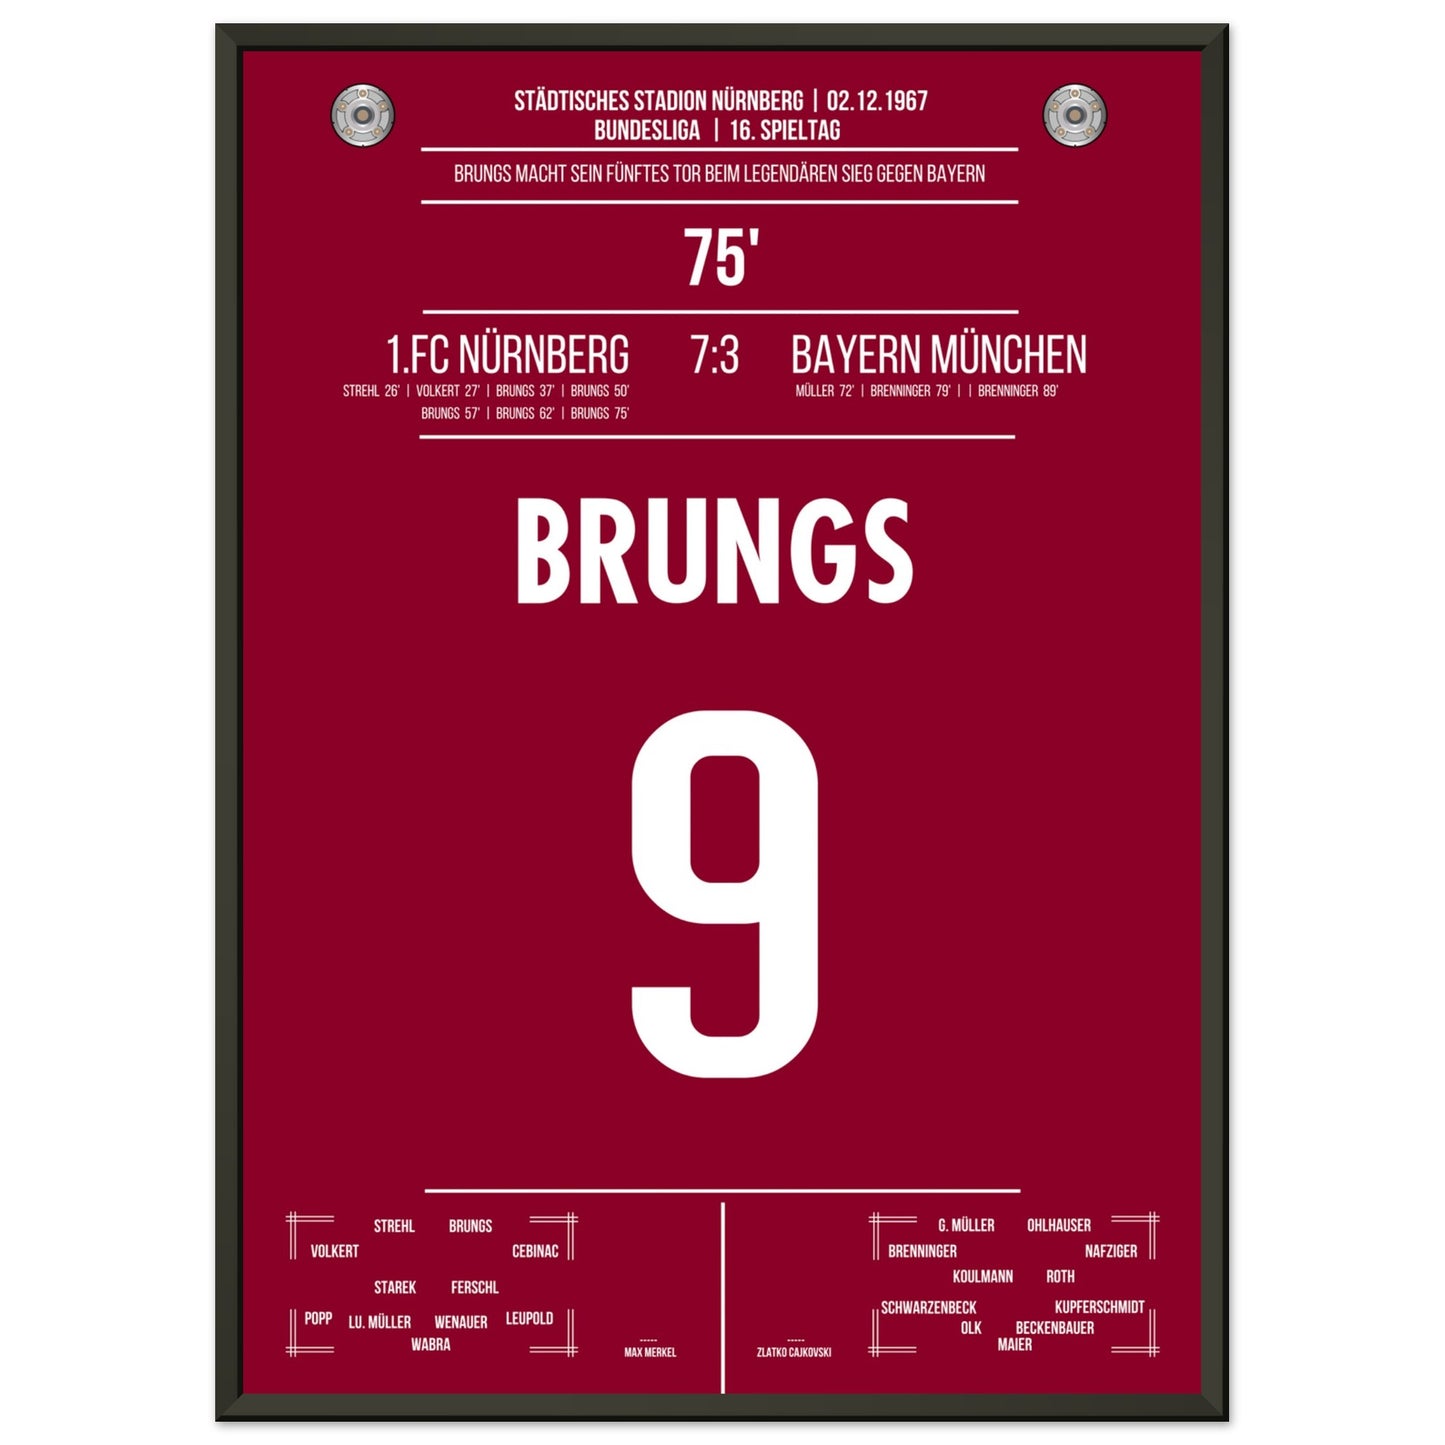 Brungs 5er-Pack beim legendären Sieg gegen Bayern 1967